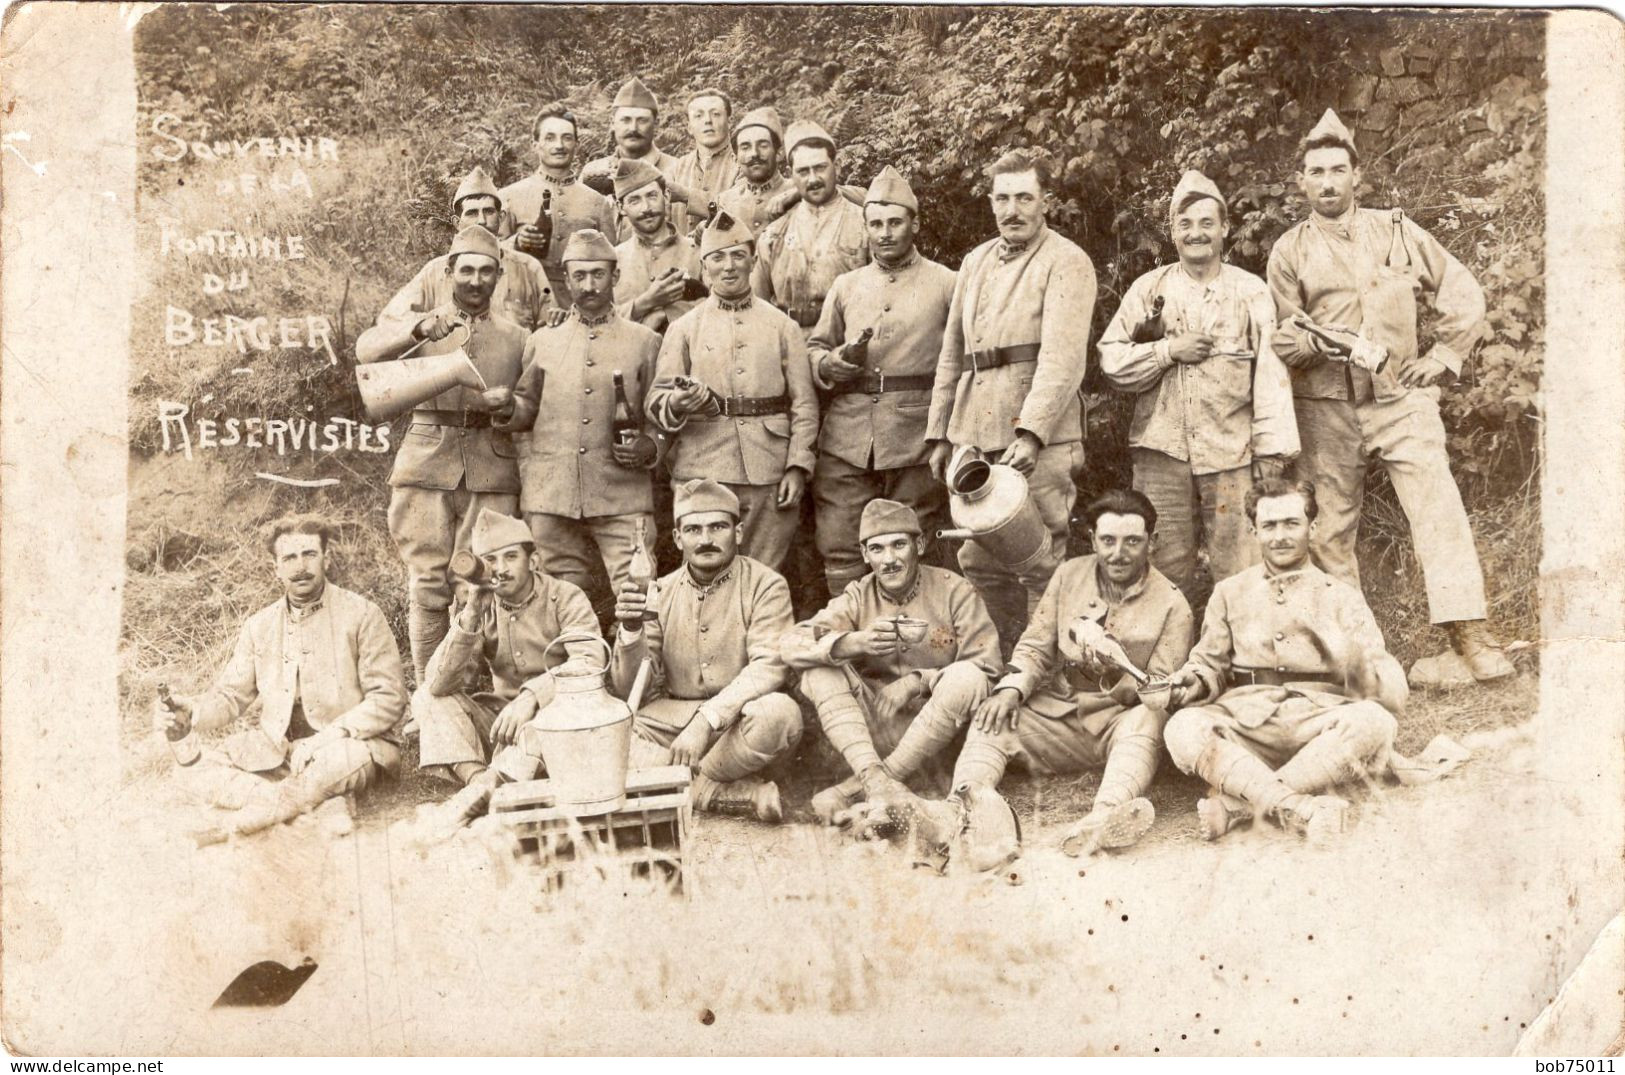 Carte Photo D'une Section De Soldats Francais ( Des Reserviste ) Au Camp De La Fontaine Du Berger Vers 1920 - Guerra, Militares